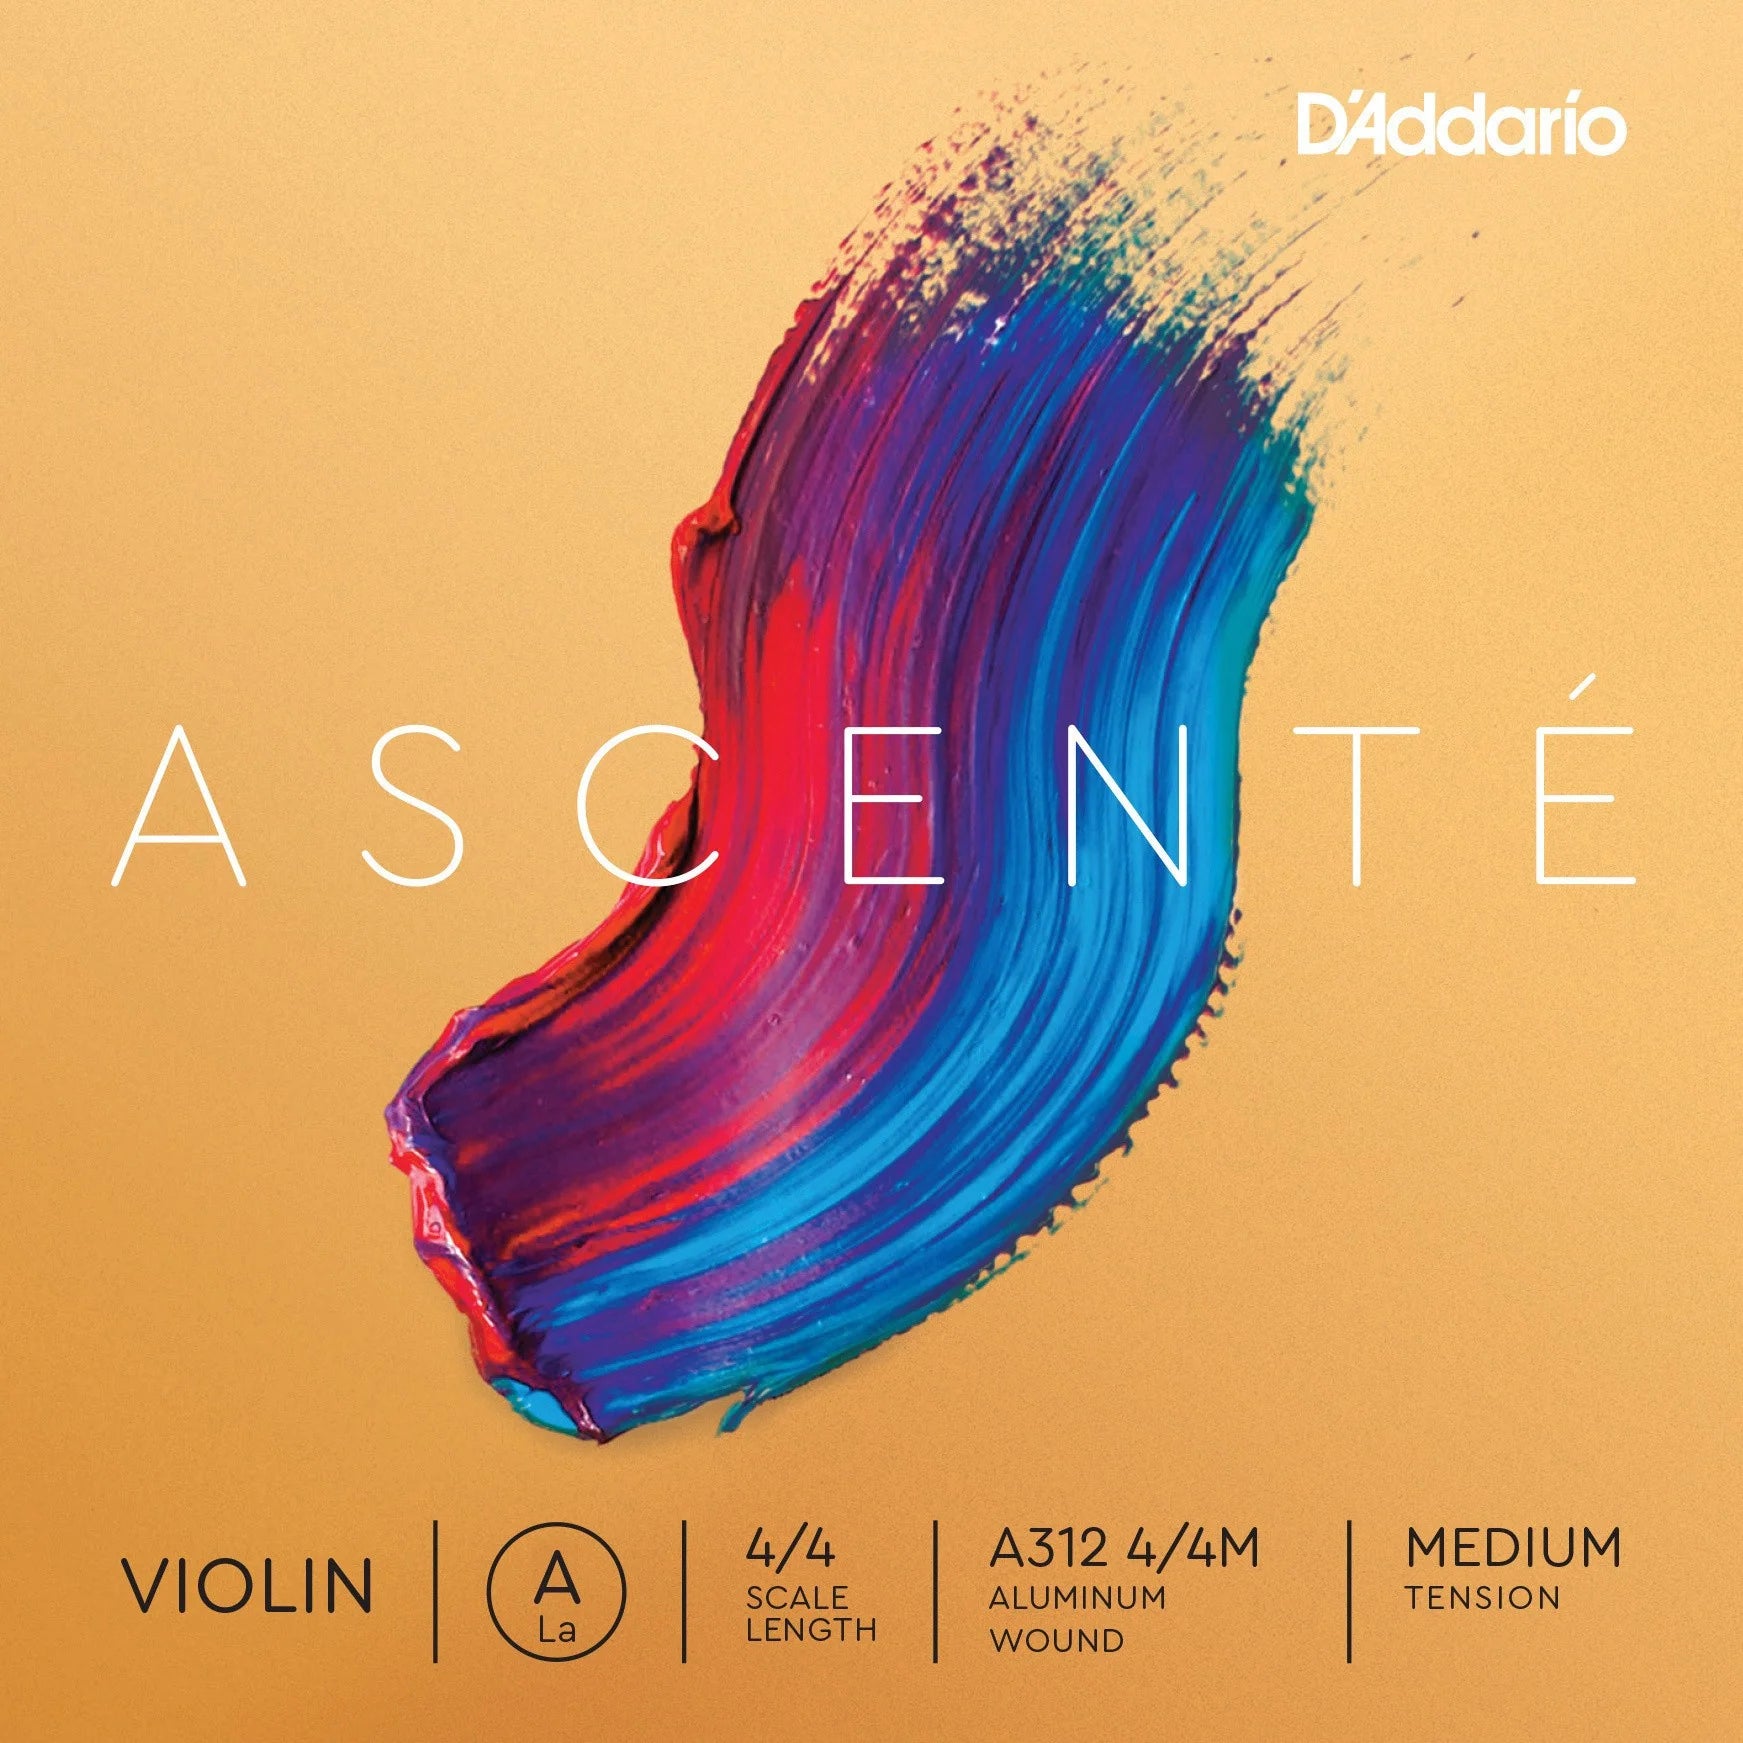 D'Addario - Ascente | Violin